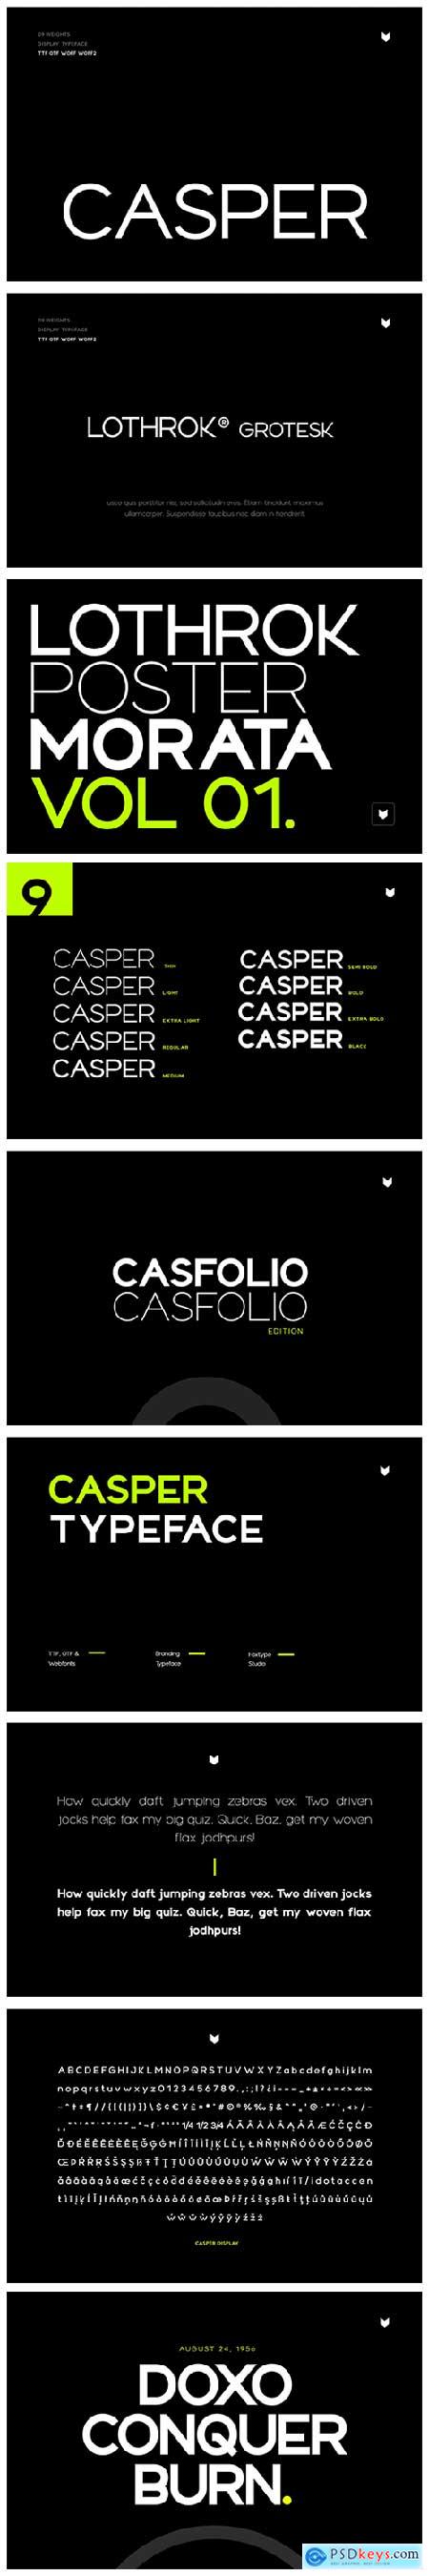 Casper Typeface 6656352